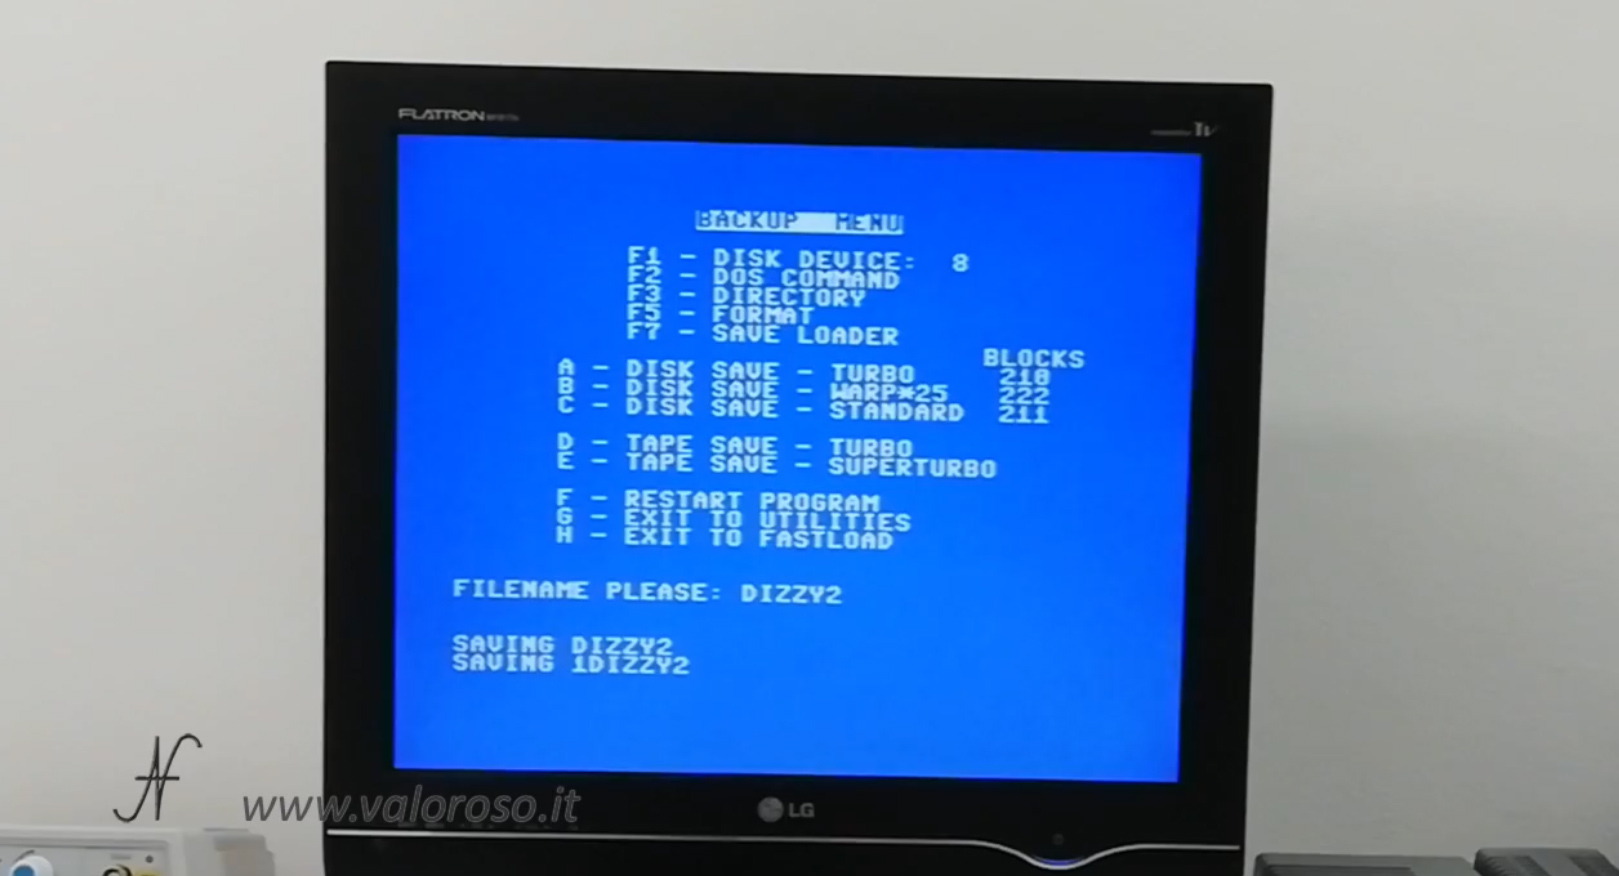 Datel Action Replay, Commodore 64, menu backup, disk save 1541, copia videogioco da cassetta a floppy disk